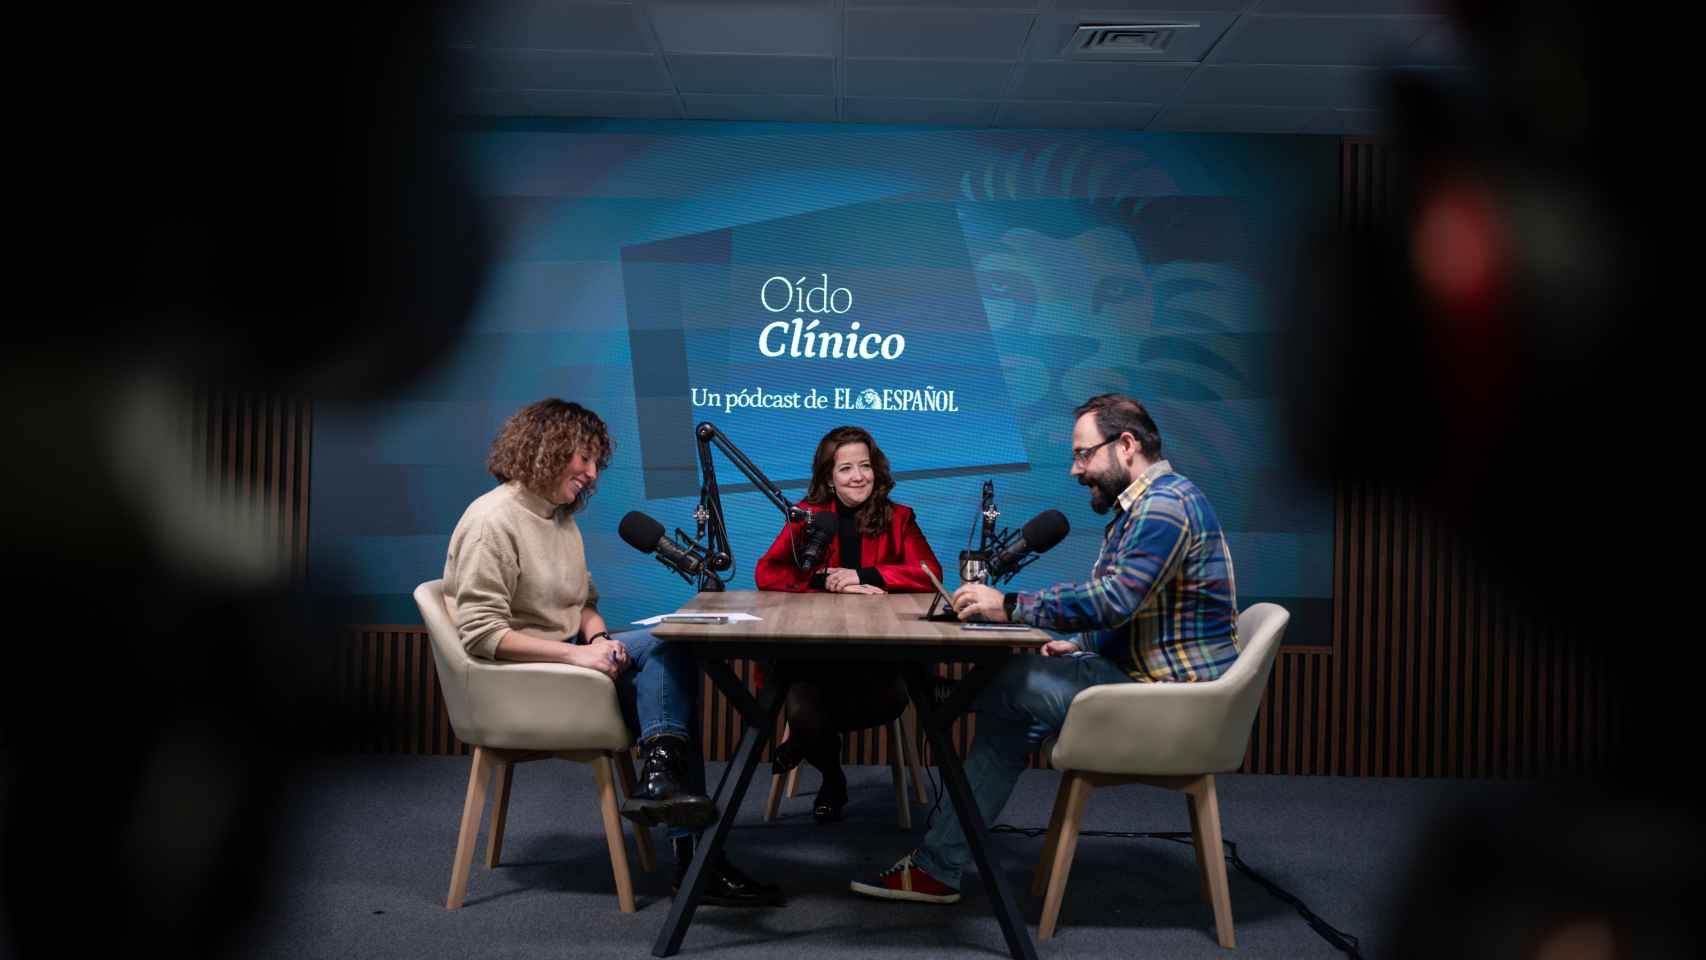 Fátima Matute durante su entrevista en Oído Clínico junto con Irene P. Nova y Eduardo Ortega.